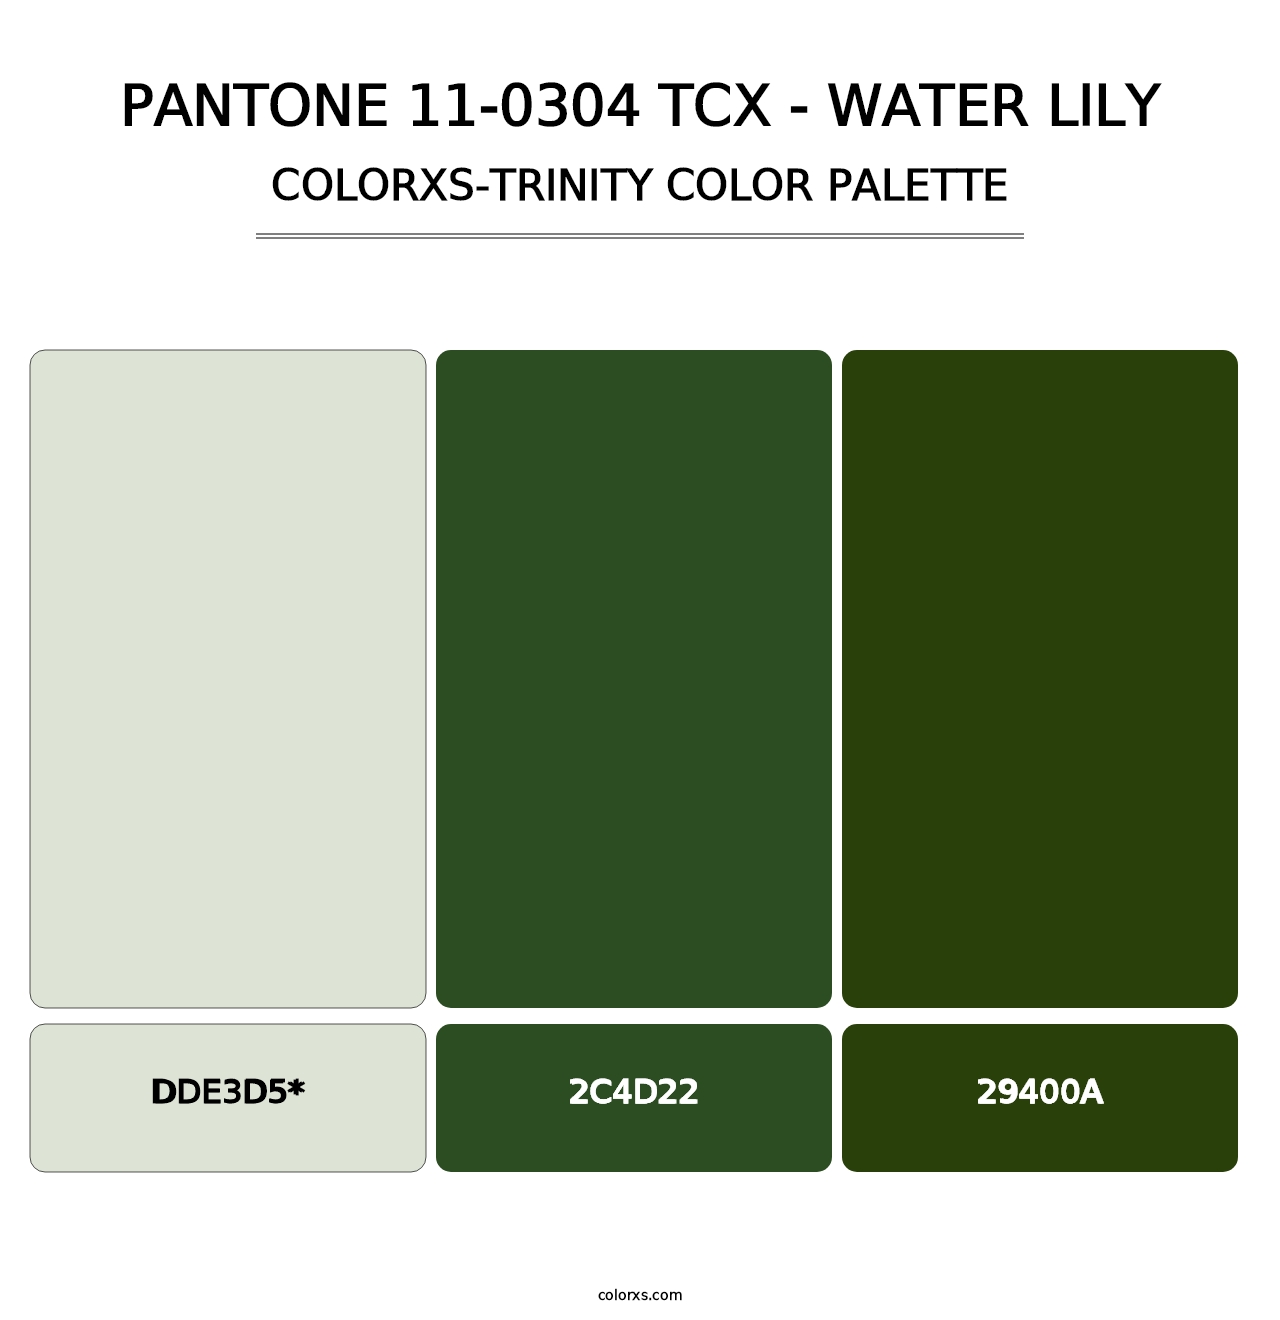 PANTONE 11-0304 TCX - Water Lily - Colorxs Trinity Palette